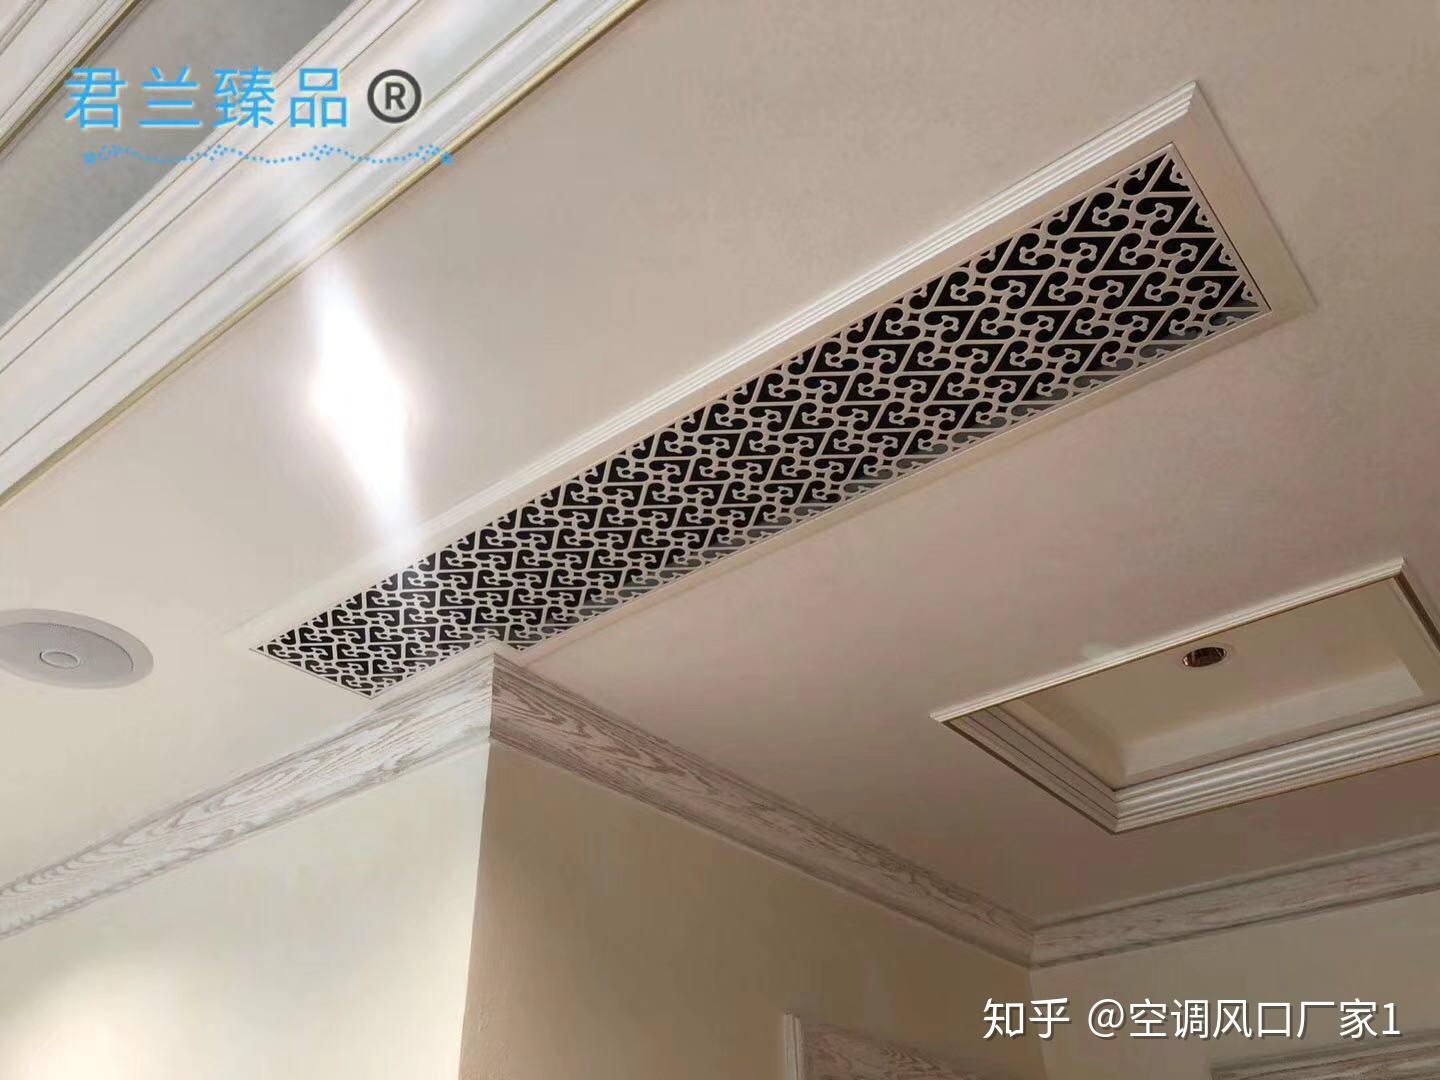 壁挂空调开孔位置图解-舒适100网